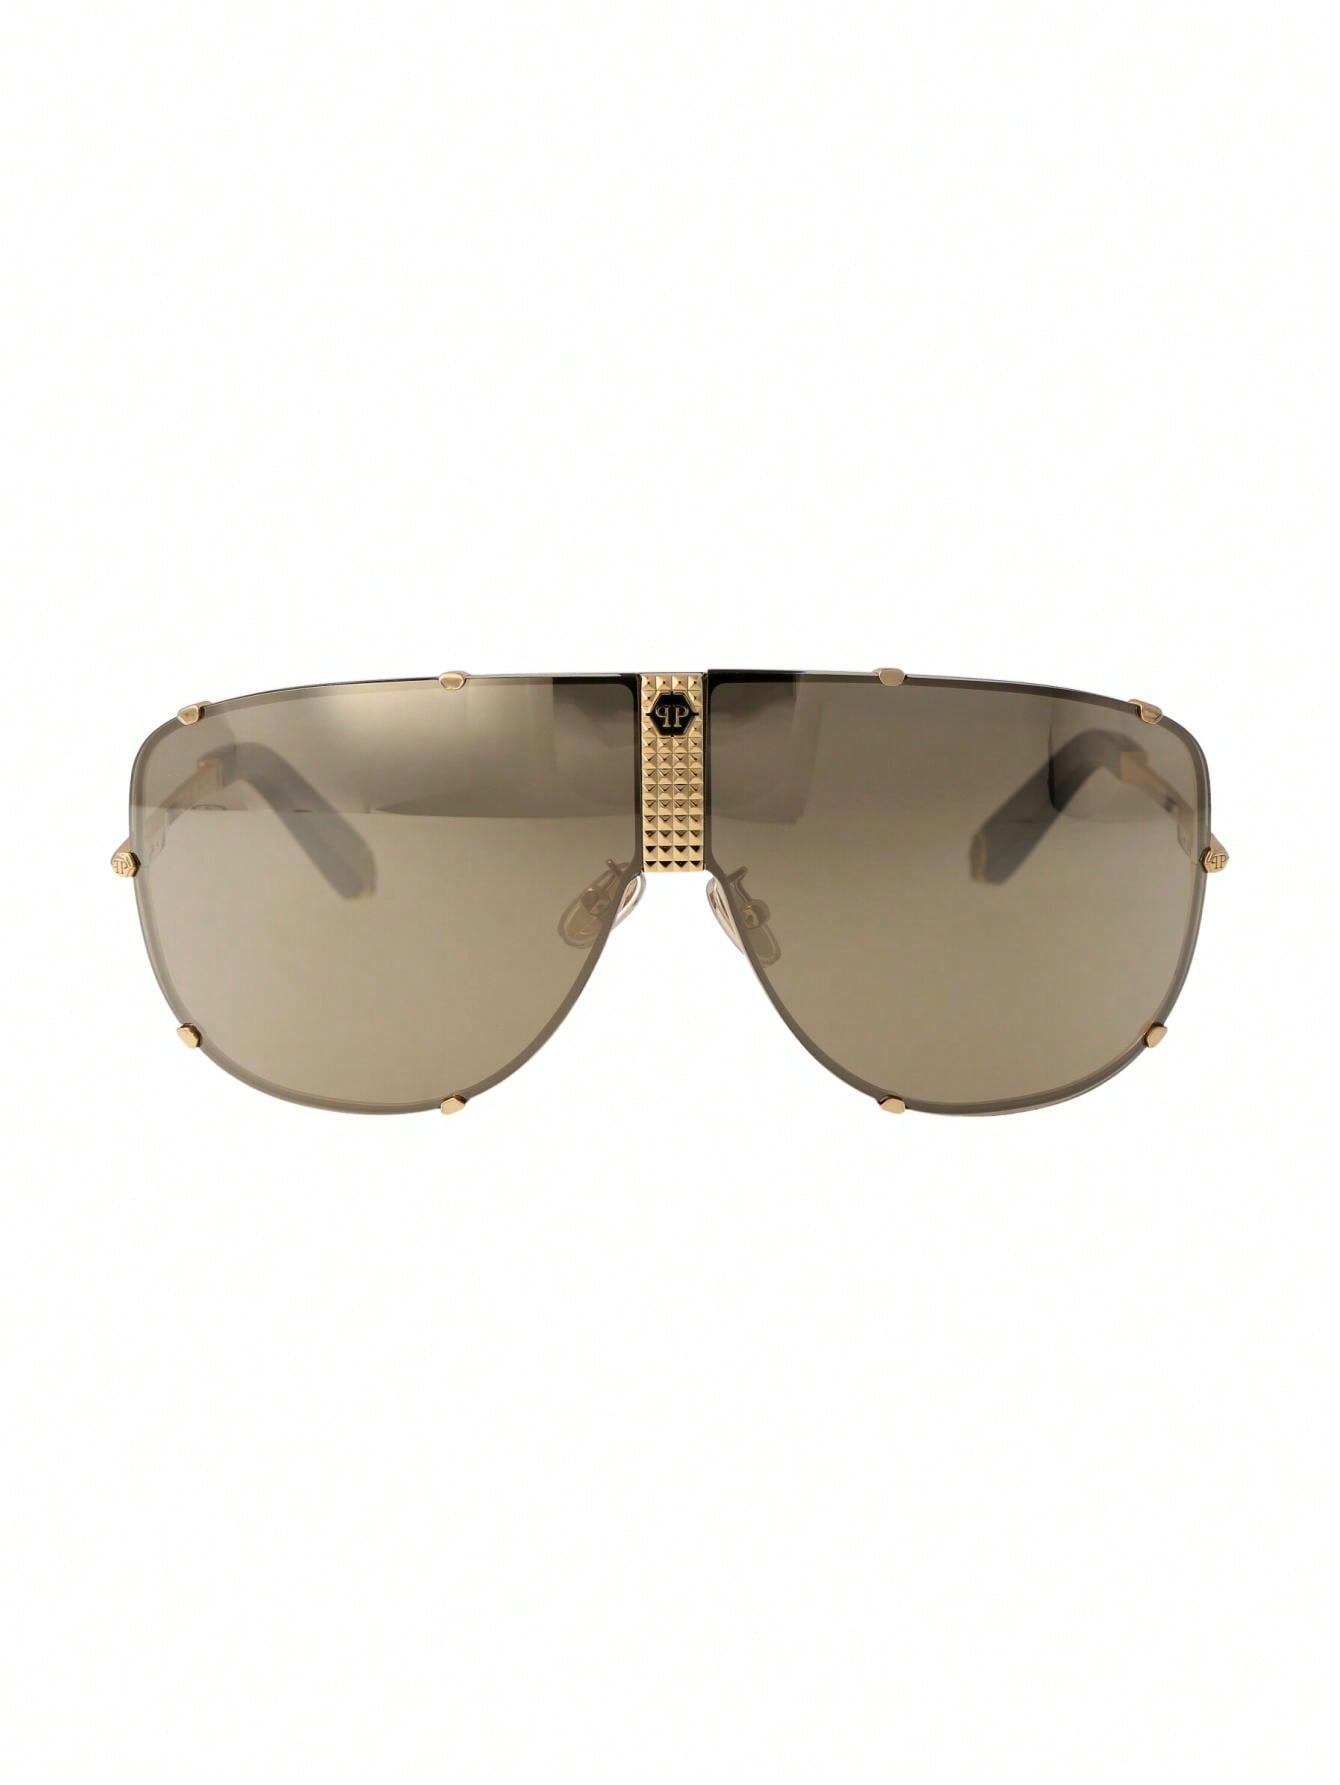 Мужские солнцезащитные очки Philipp Plein DECOR SPP075M400G, многоцветный